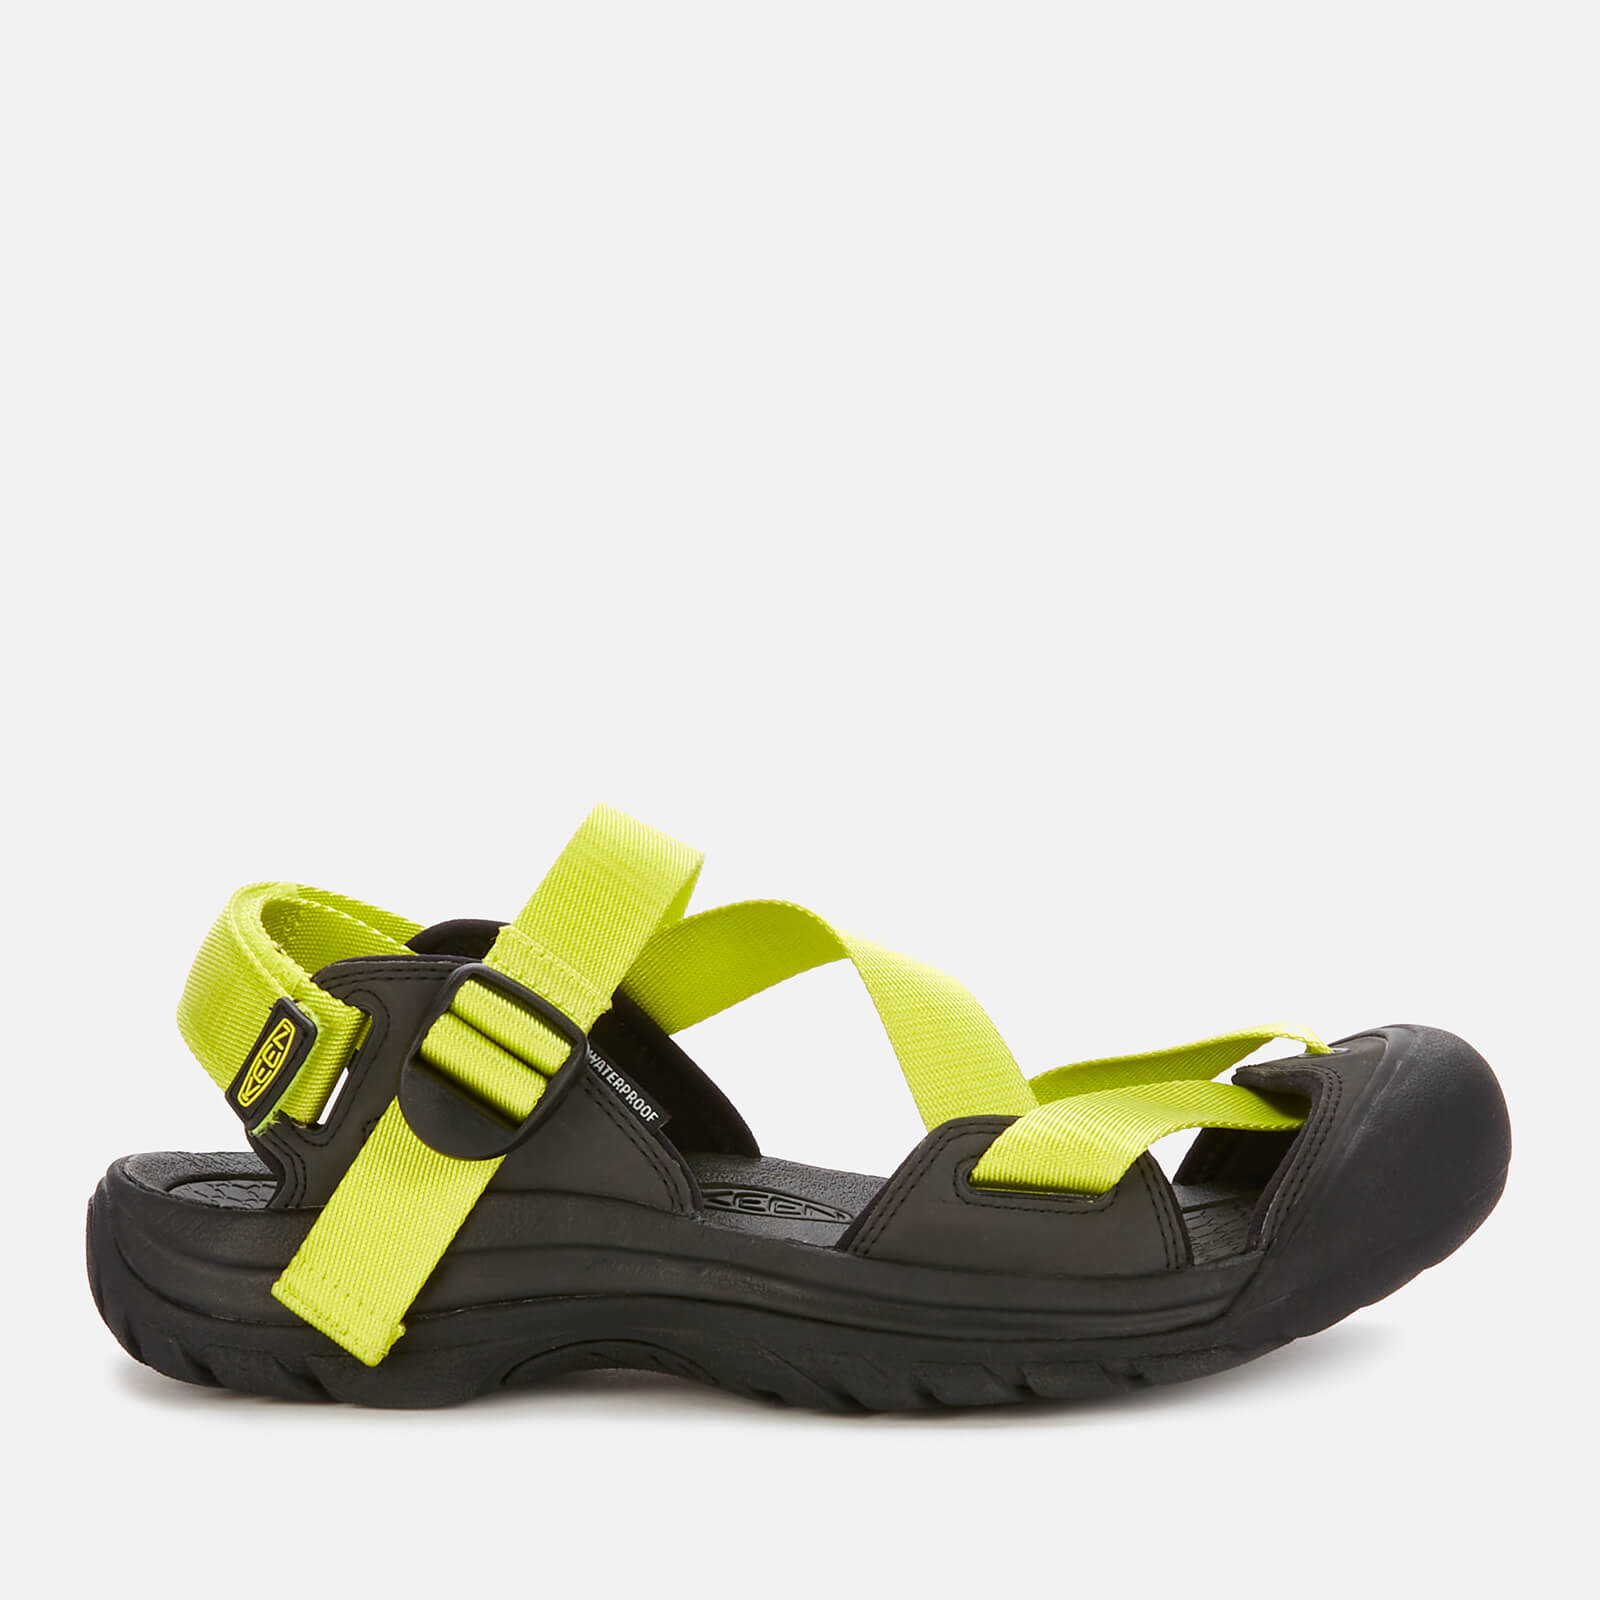 Keen Men's Zerraport 11 Sandals - Bright Yellow/Black - UK 7